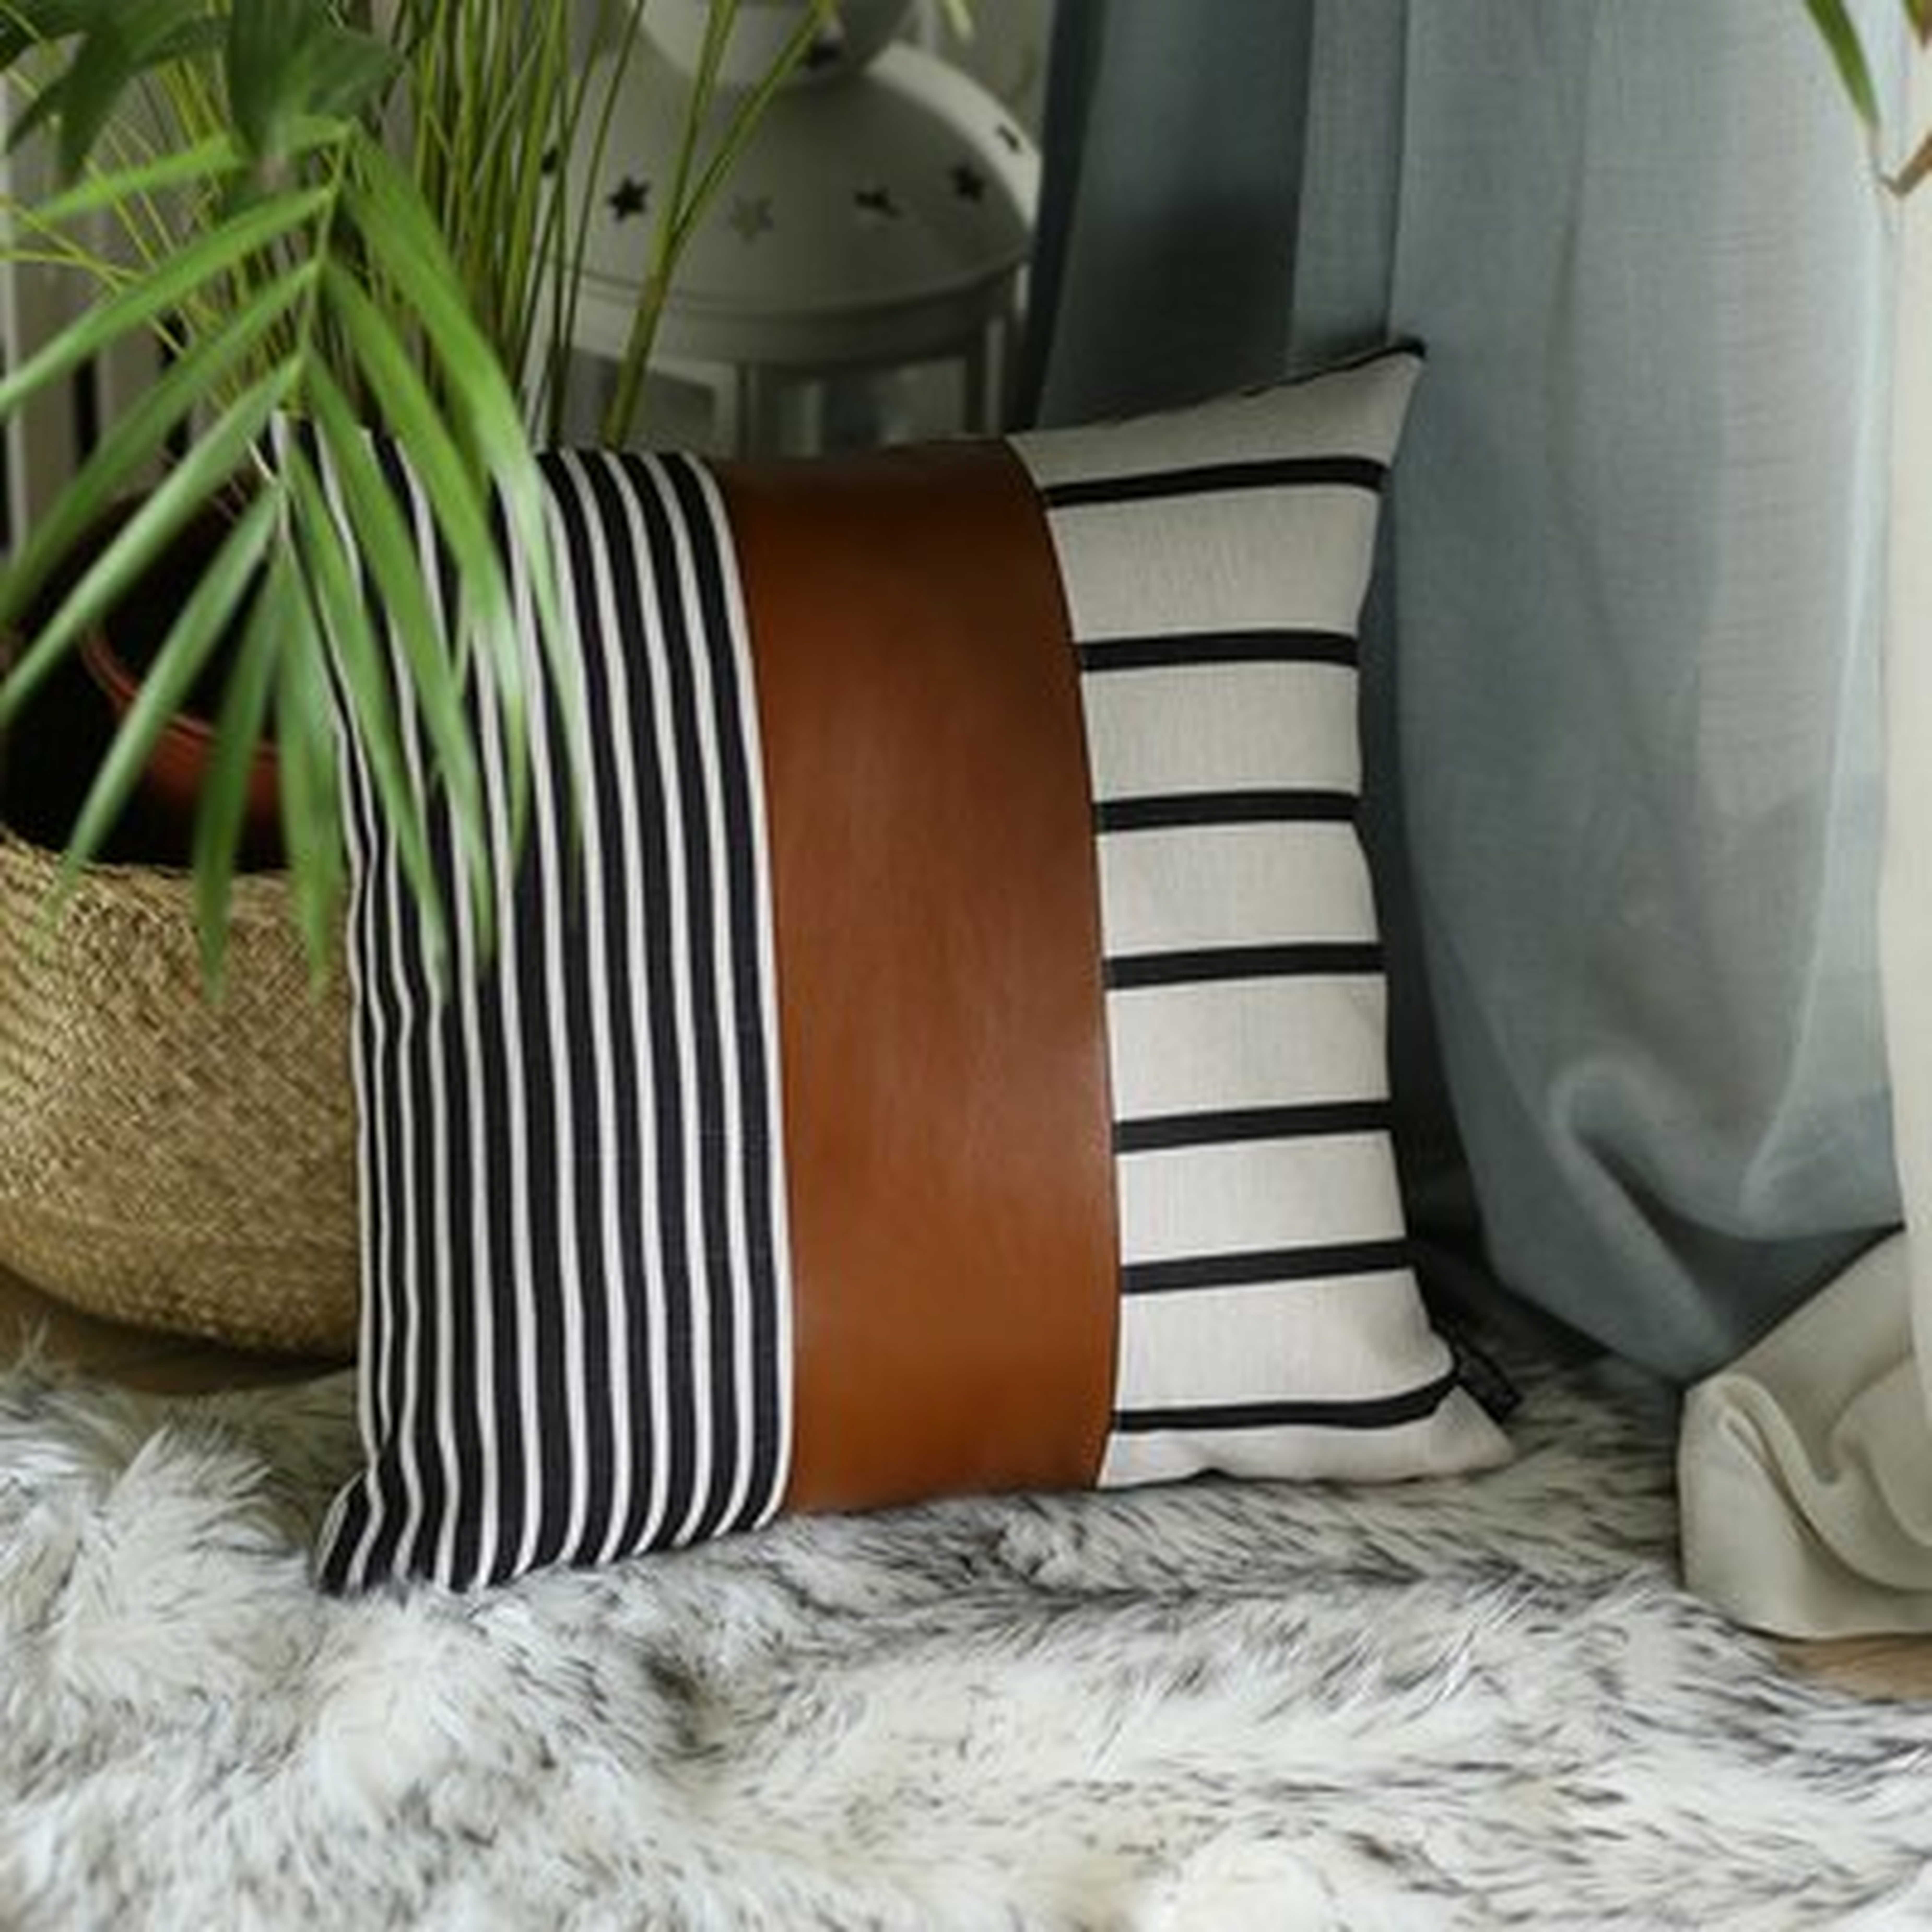 Bencomo Decorative Geometric Square Pillow Cover - Wayfair